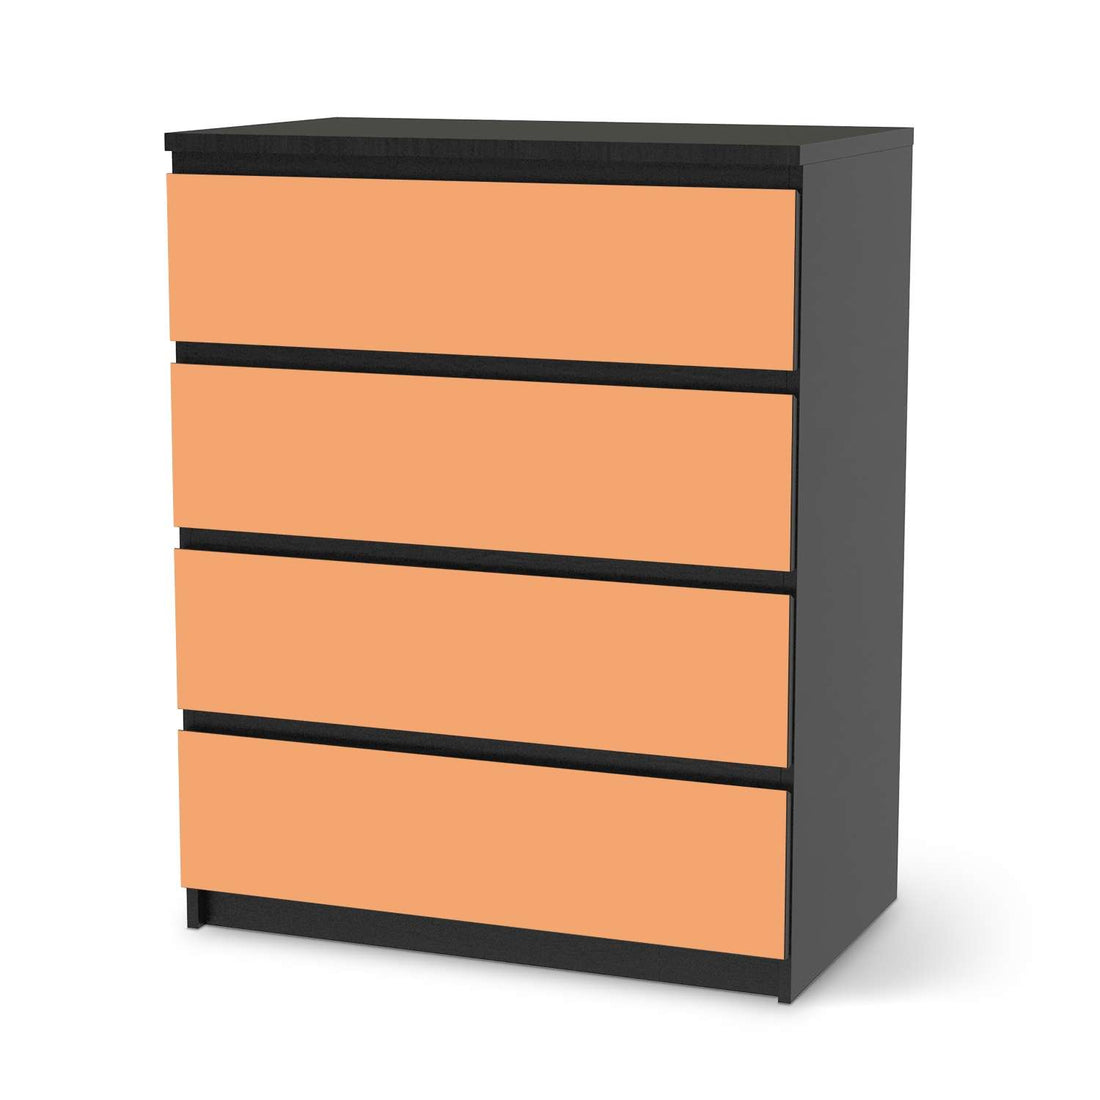 Folie für Möbel Orange Light - IKEA Malm Kommode 4 Schubladen - schwarz